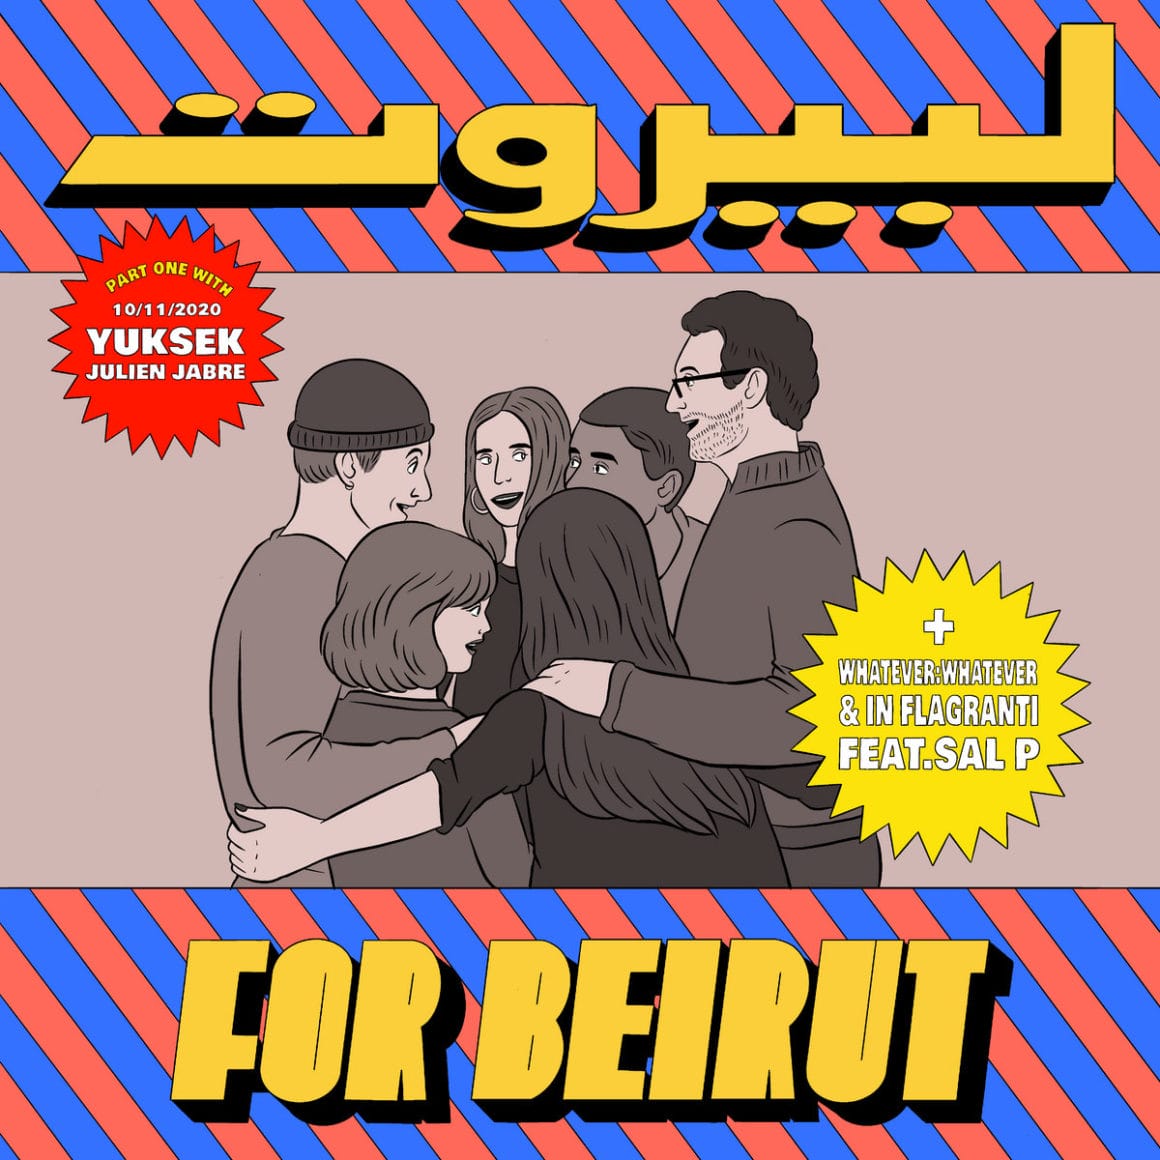 Visuel du projet "For Beirut", réalisé par l'illustratrice Raphaëlle Macaron